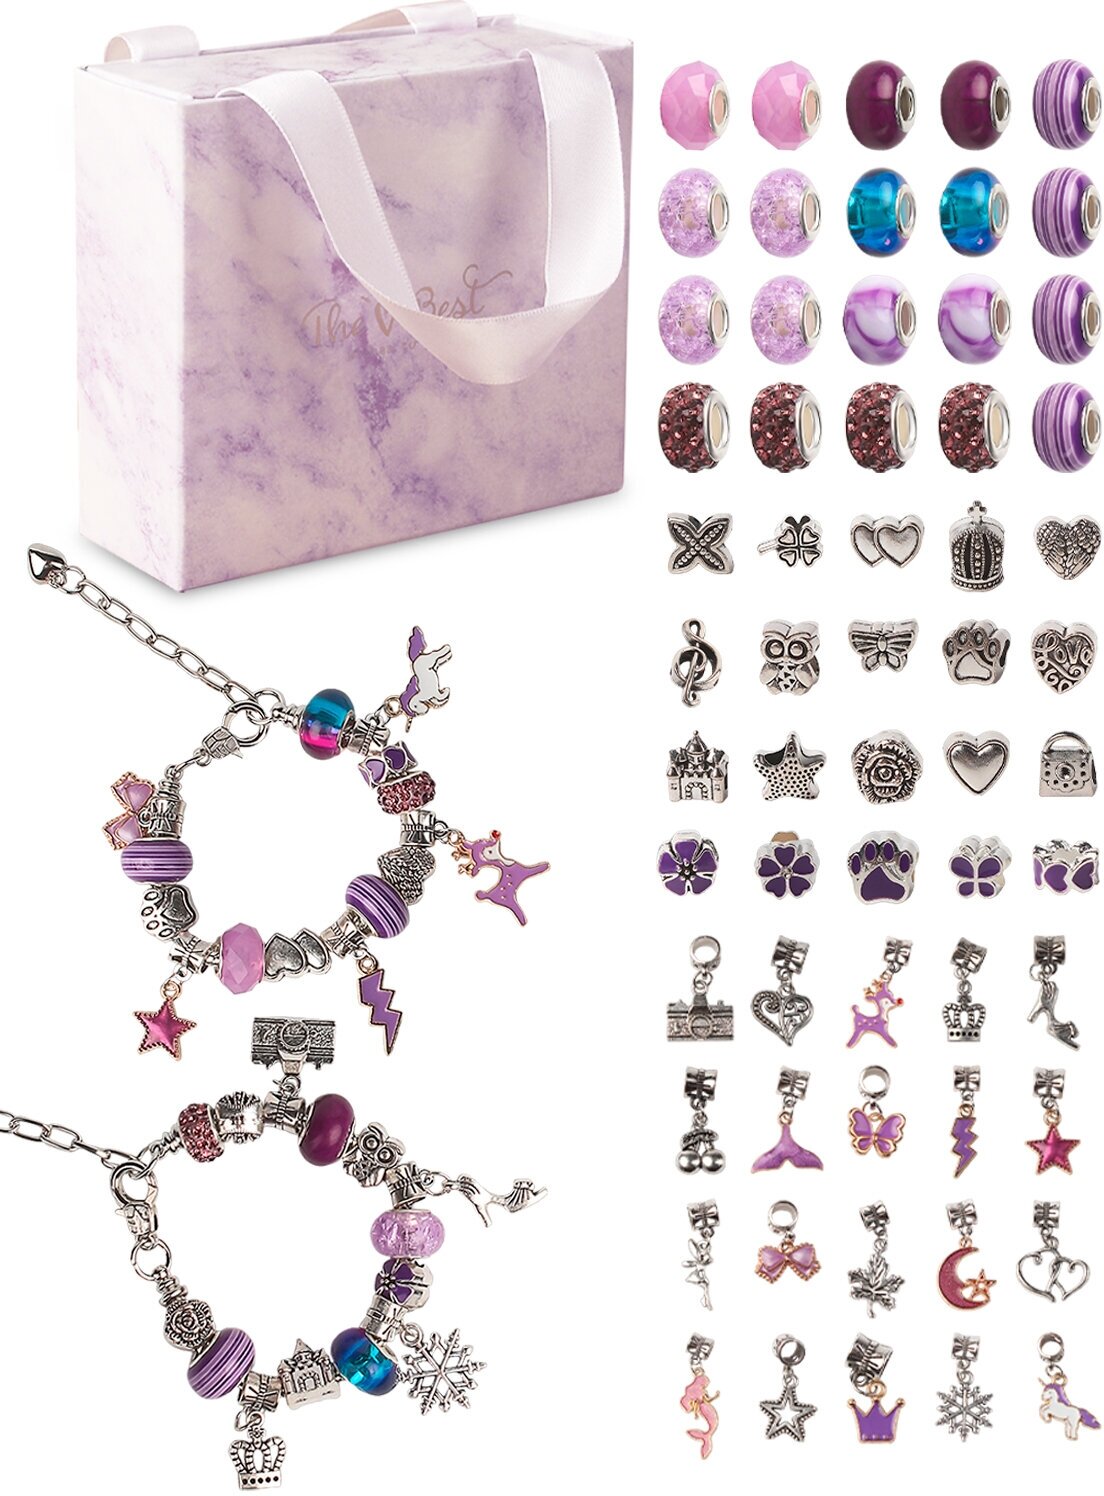 Детский подарочный набор для создания браслетов с шармами "Фиолетовый" - 66 предметов для девочек, подарок для творчества, детская бижутерия